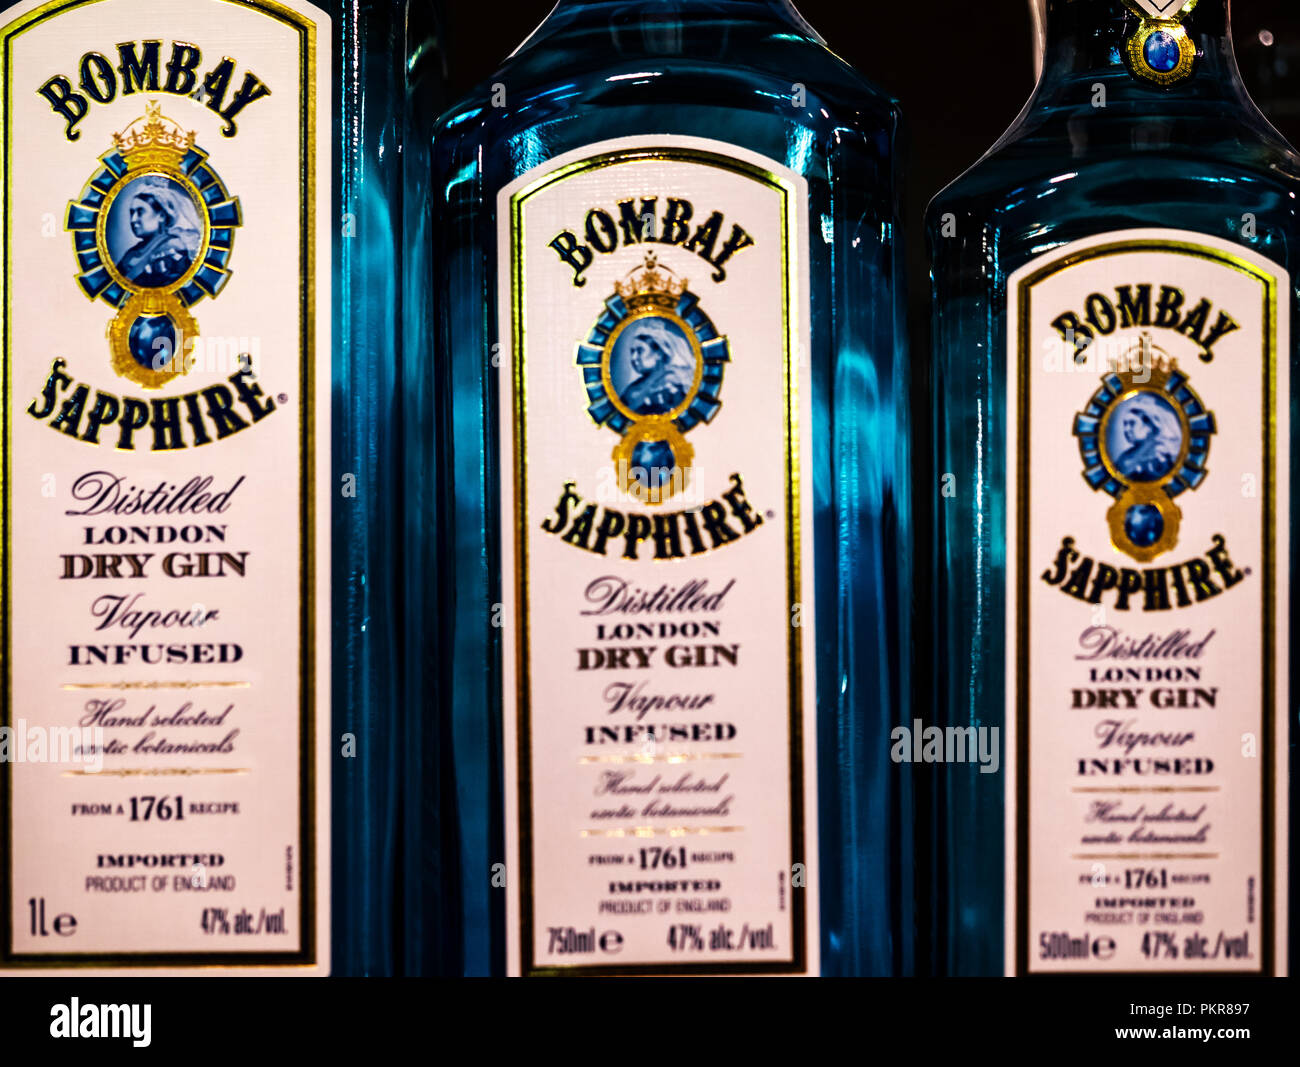 Filas de Bombay Sapphire Gin en la tienda. Su nombre proviene de la popularidad de gin en la India durante el Raj británico. Foto de stock